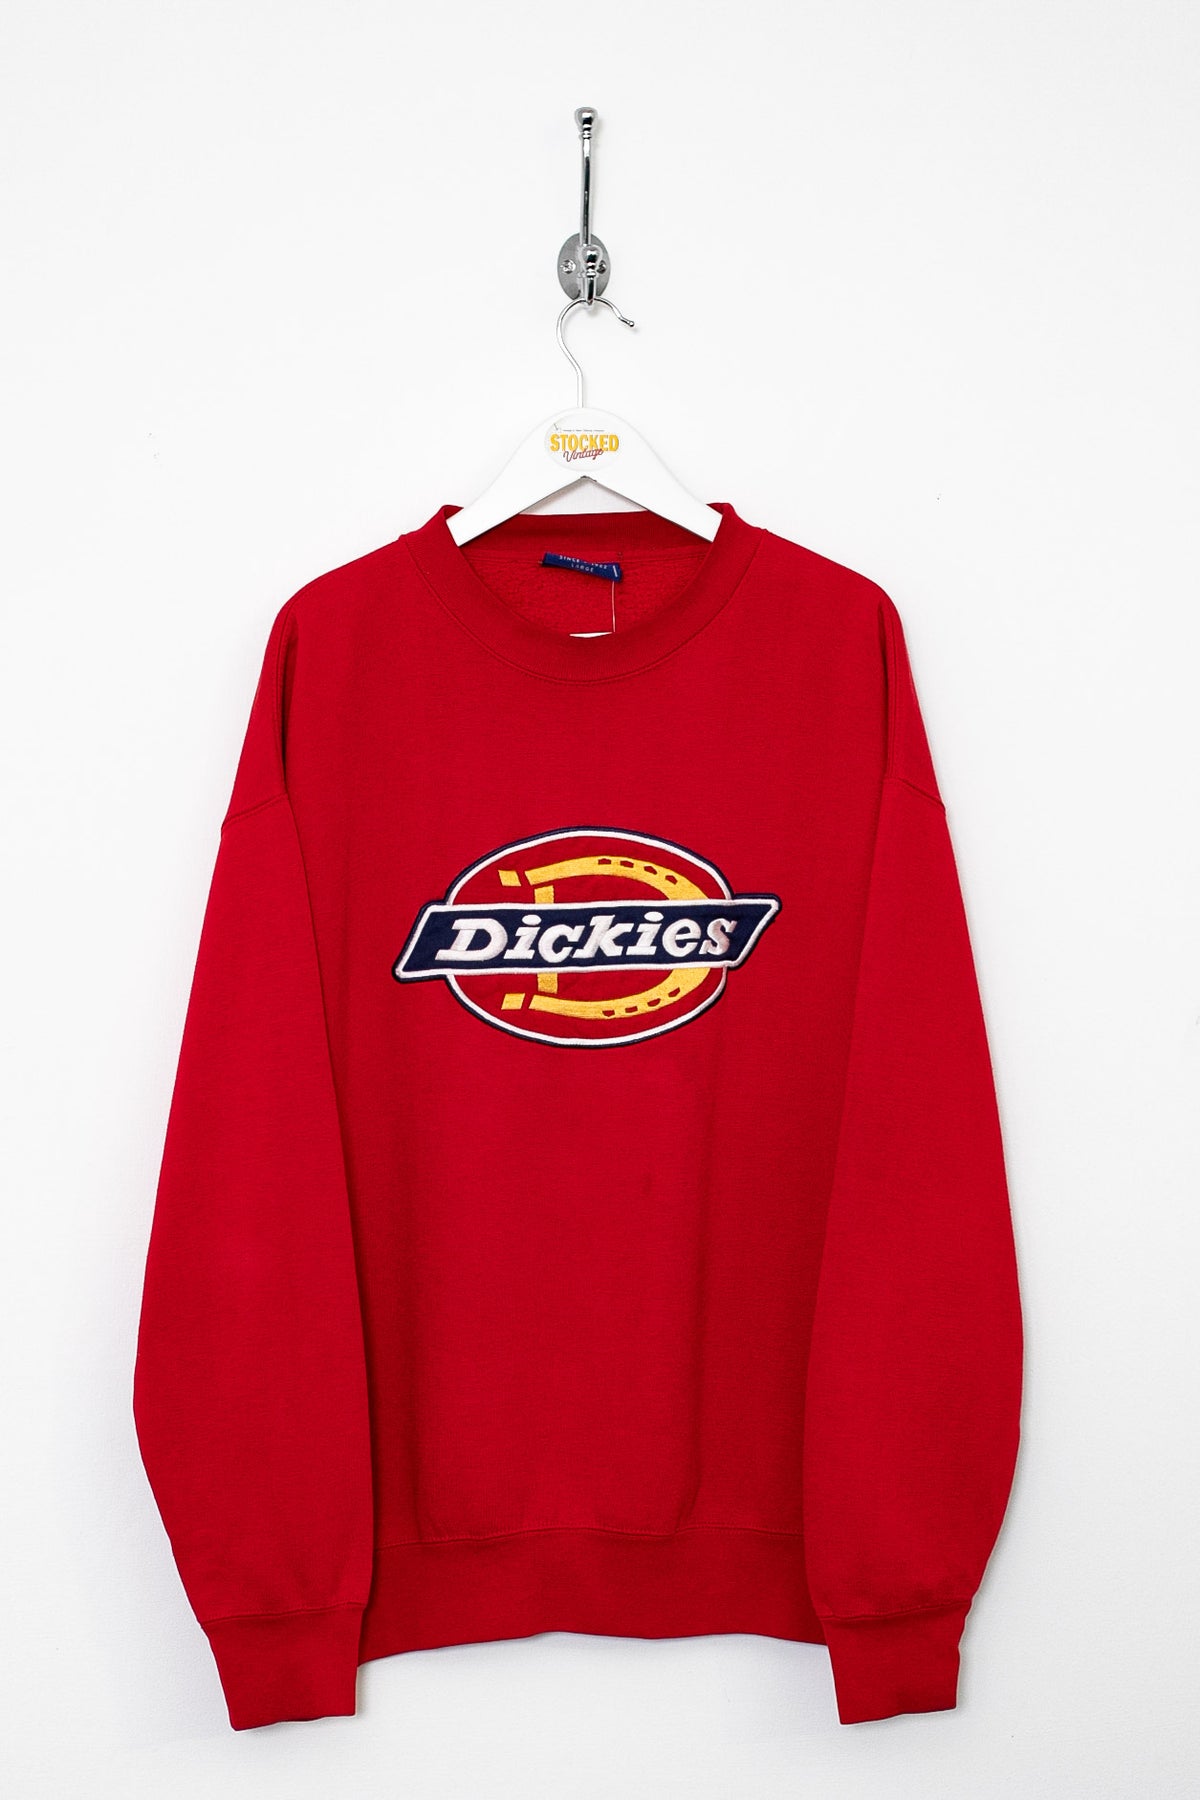 00s Dickies Sweatshirt (M)